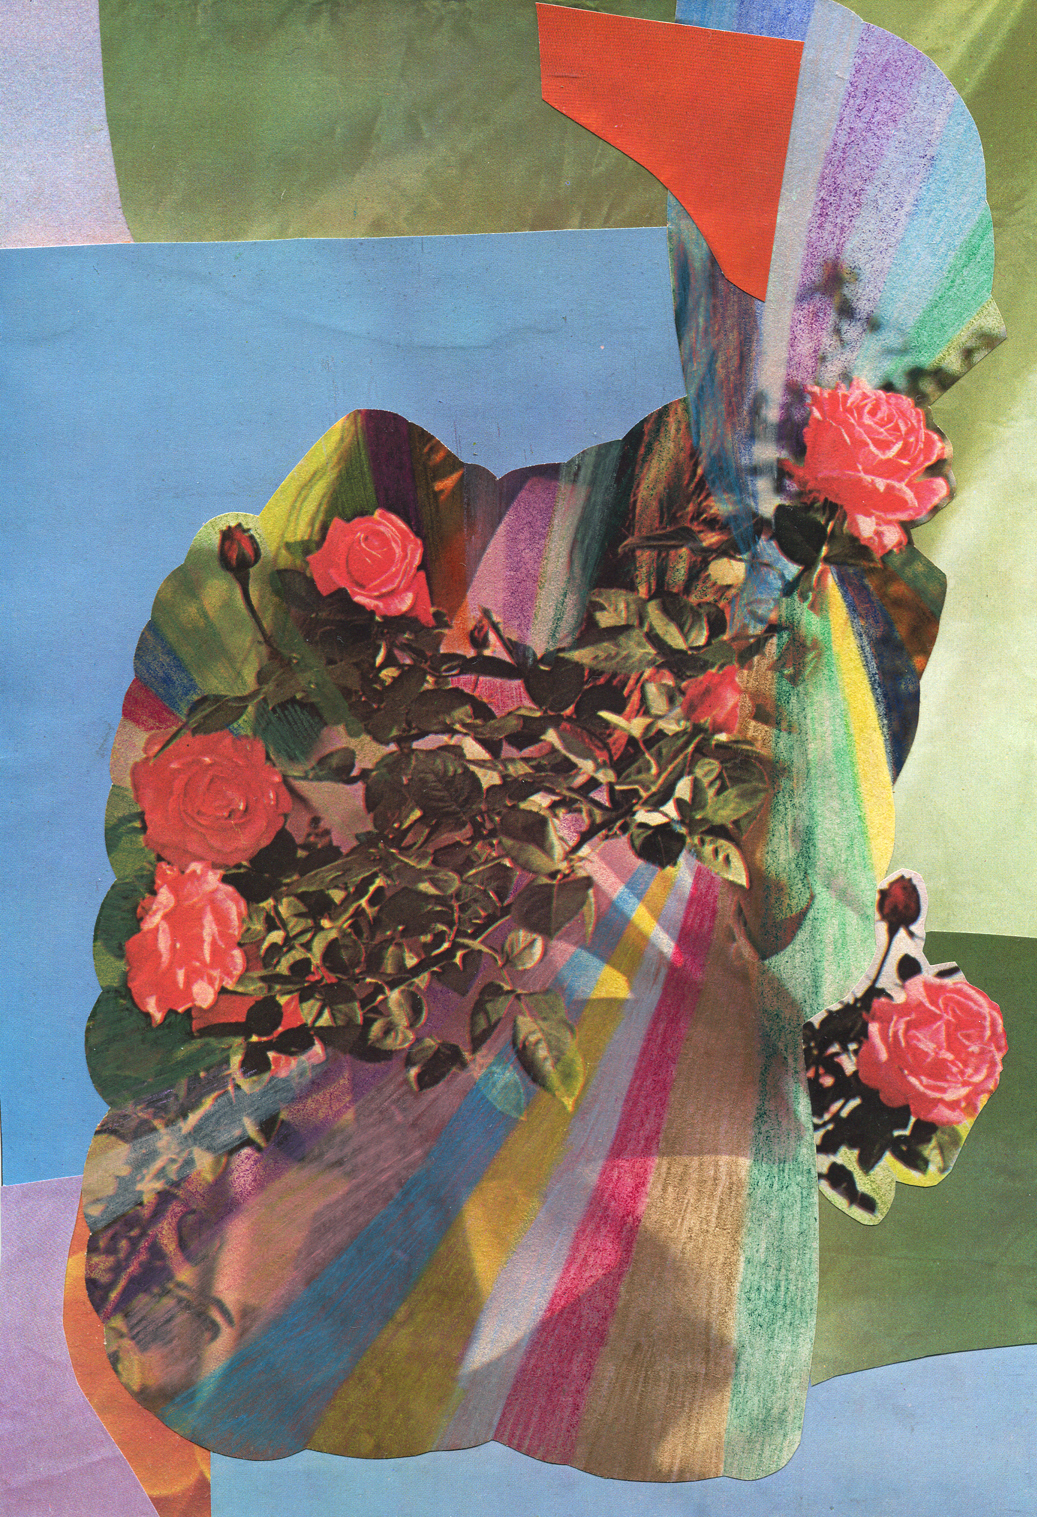 Rainbow Rose Garden #2, collage, found paper, pencil